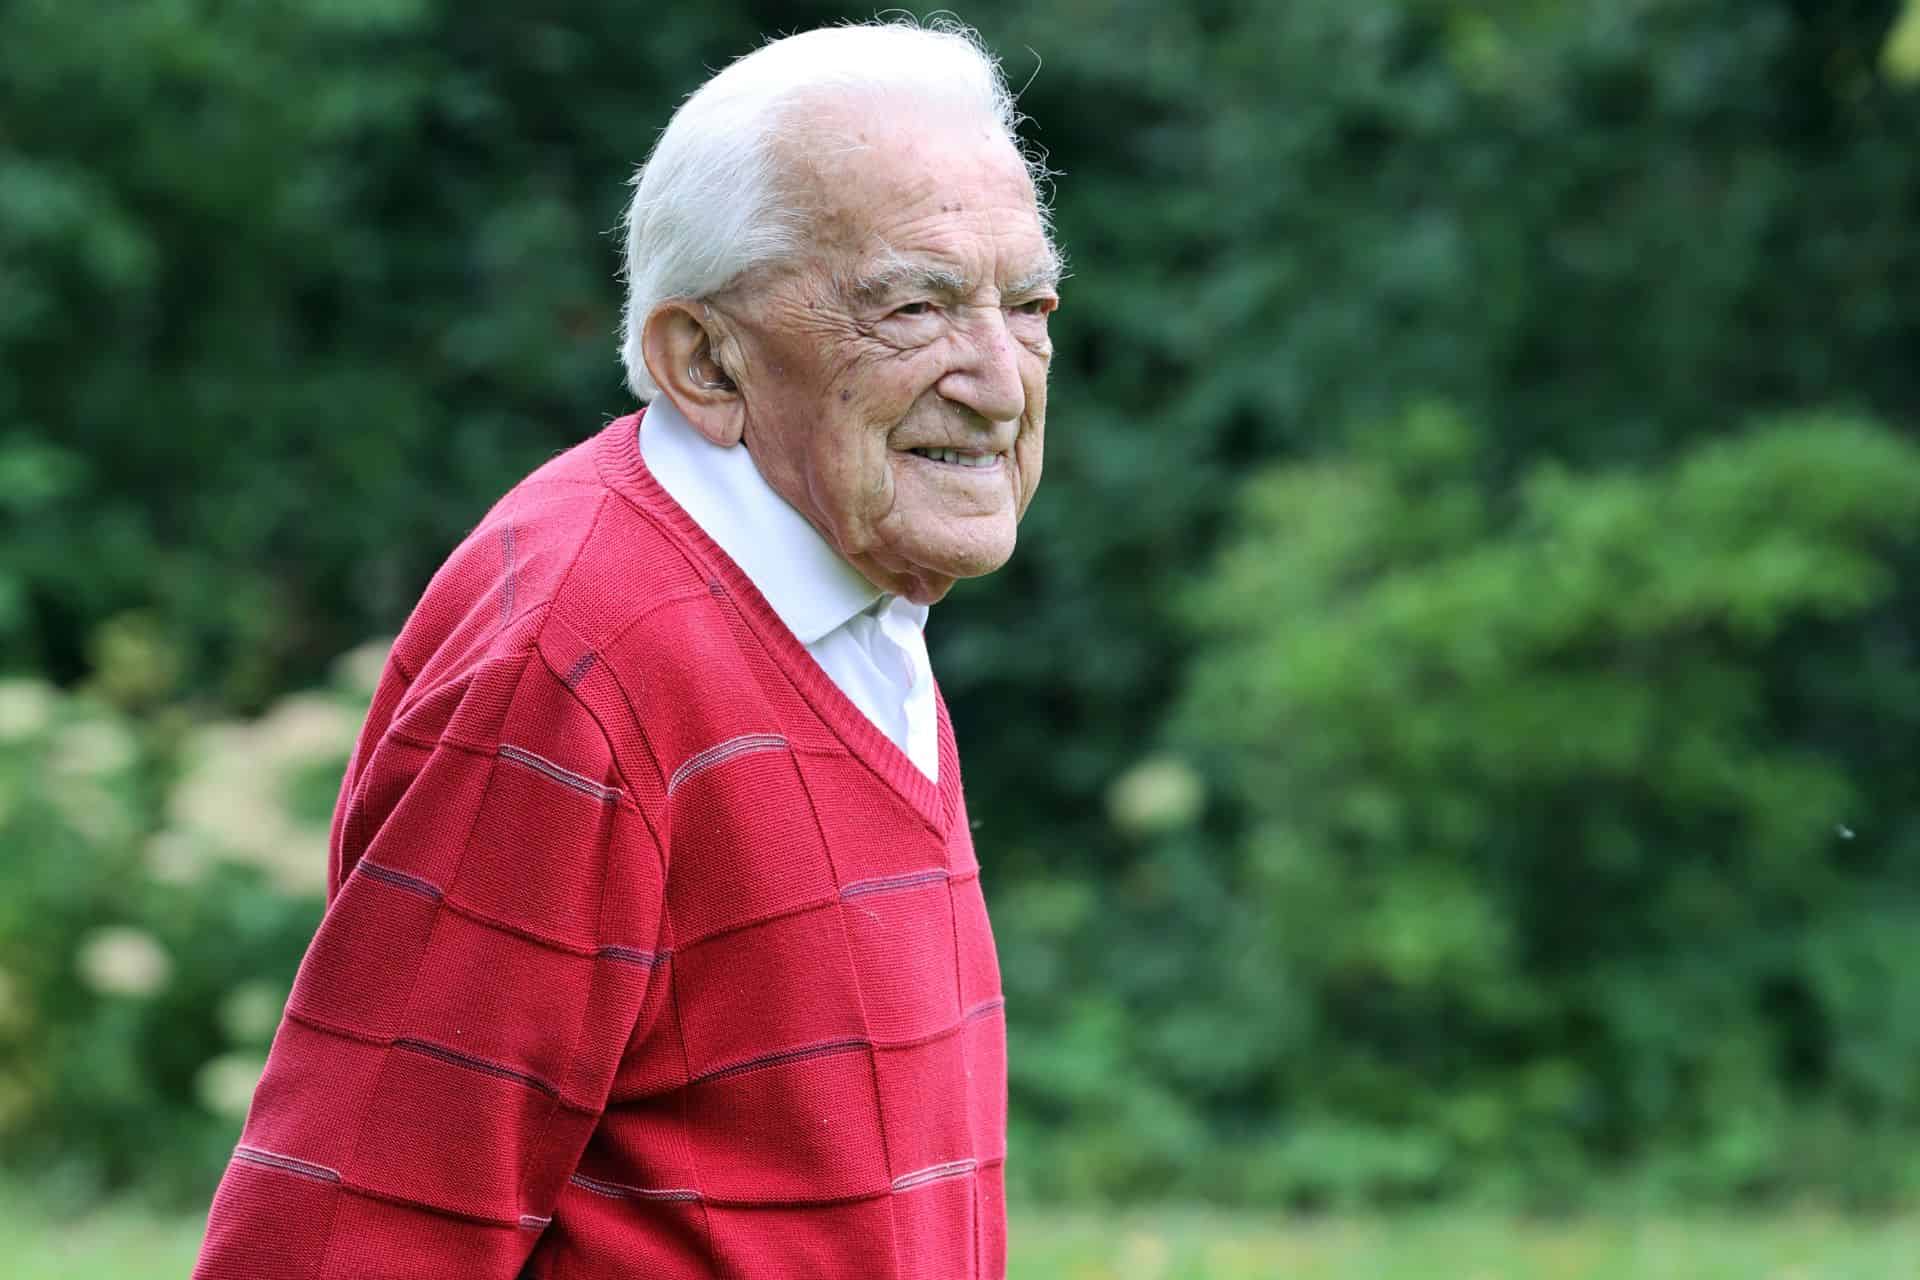 Alfons Leempoels is oudste huisarts van ons land: 'De jeugd heeft chance nu te mogen opgroeien'